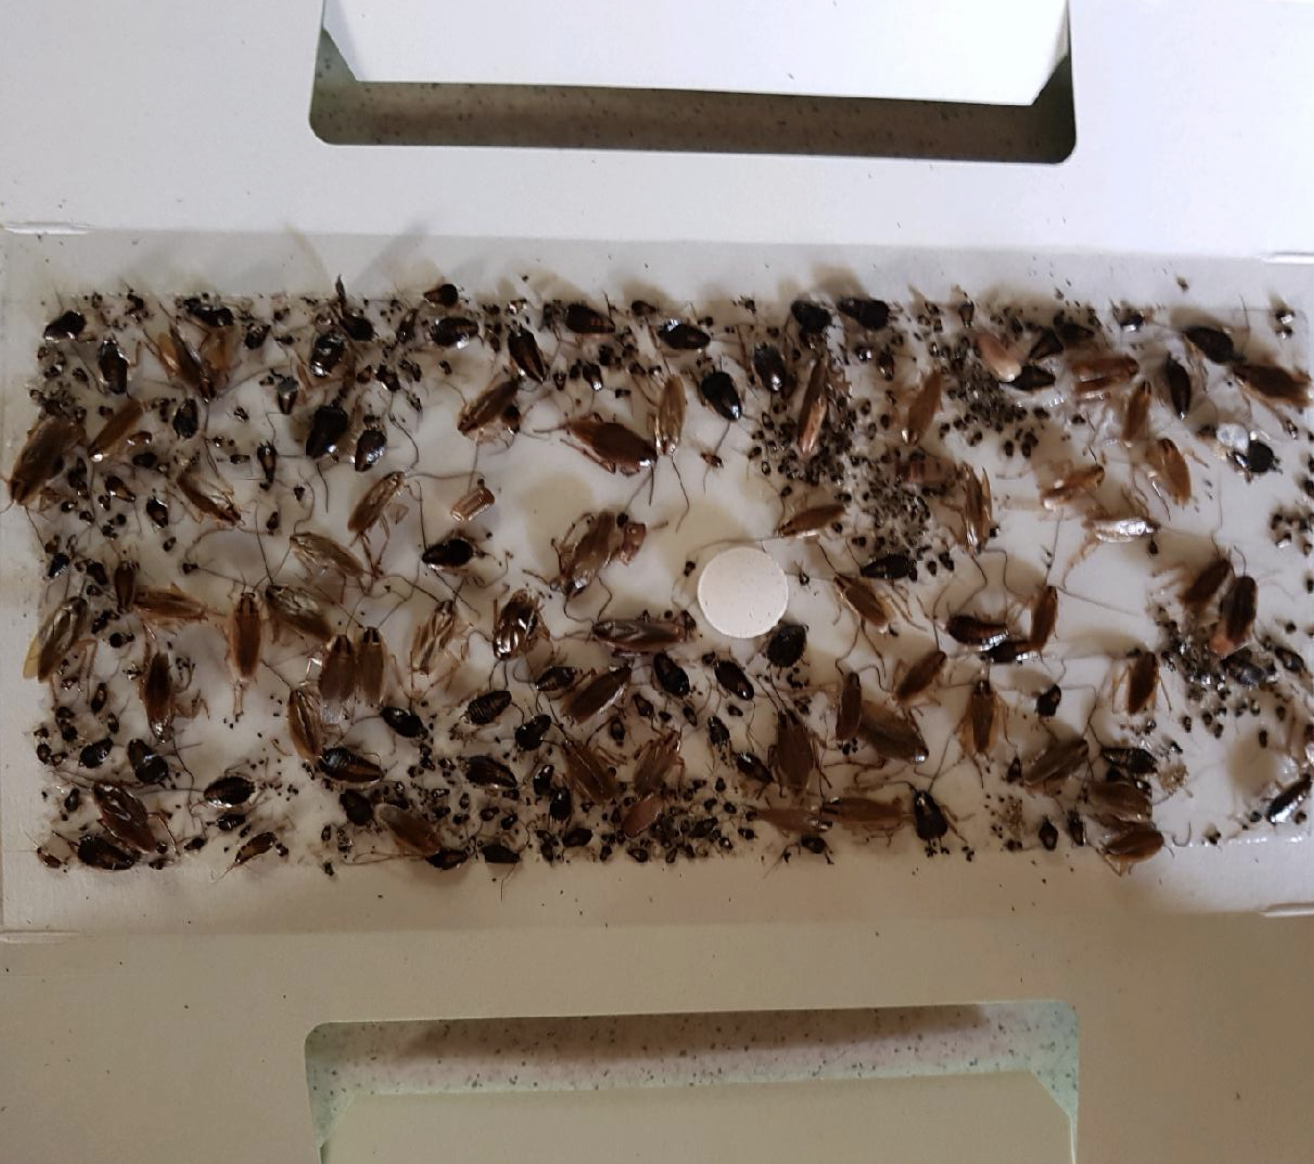 Cockroach infestation in Randwick